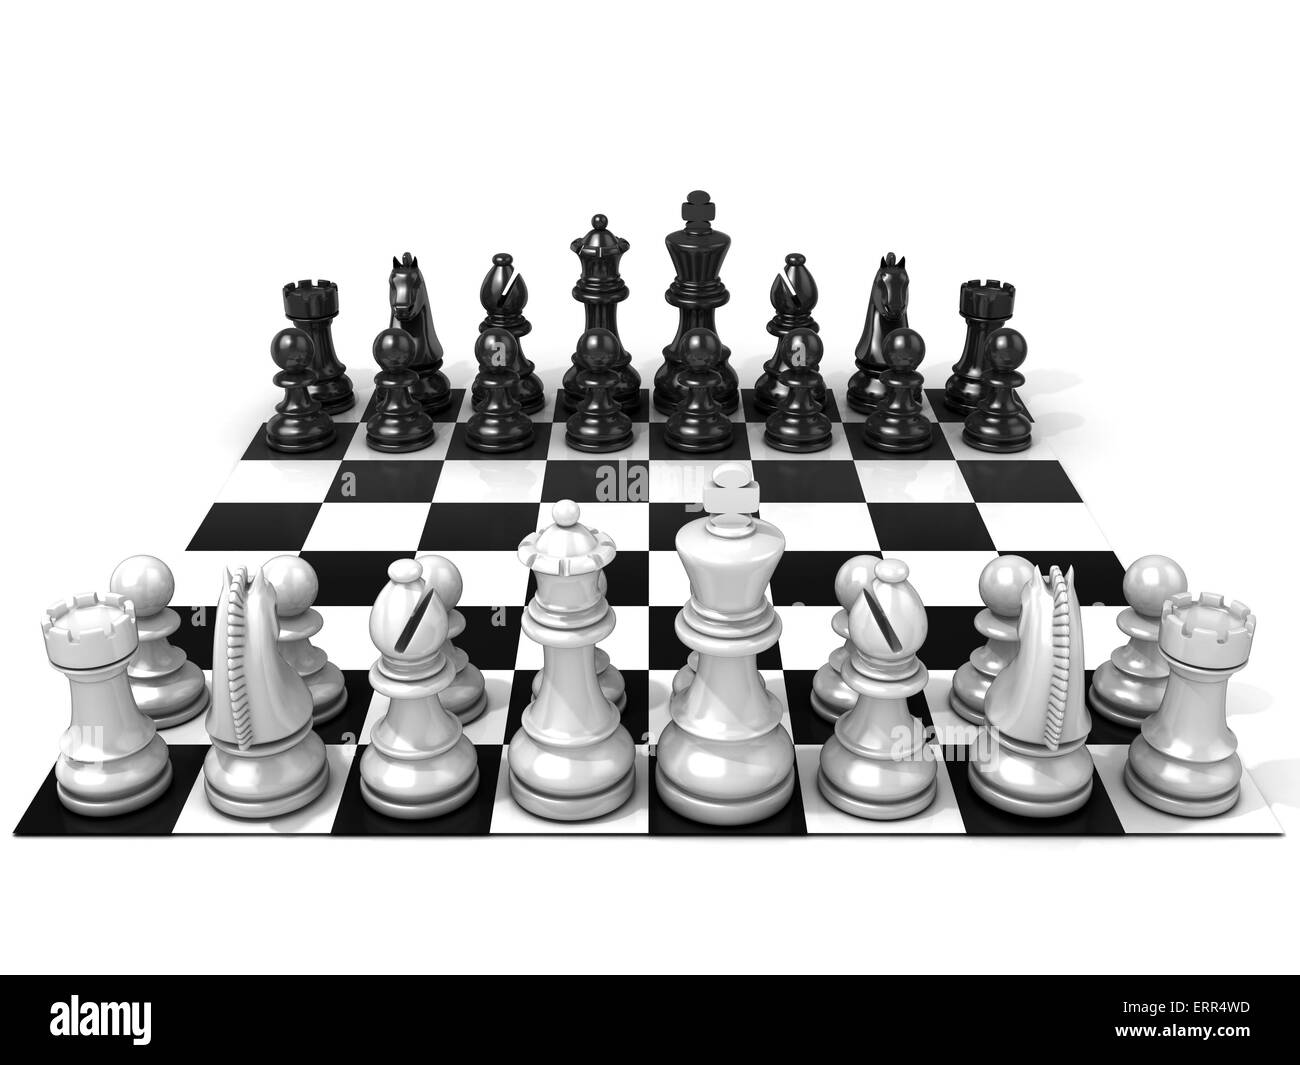 Schachbrett mit allen Schachfiguren, isoliert auf weißem Hintergrund. Vorderansicht Stockfoto